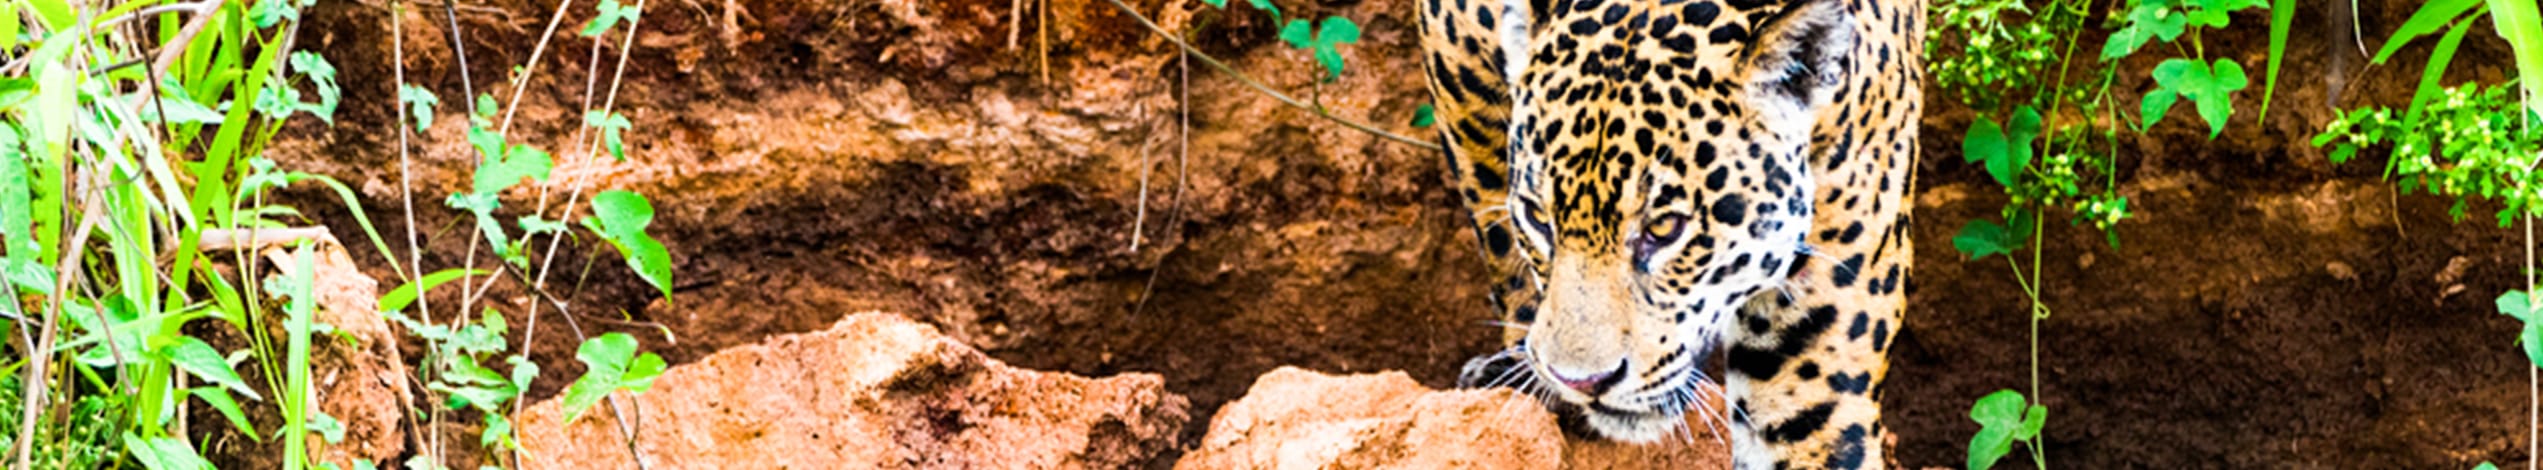 Jaguarer i Pantanal